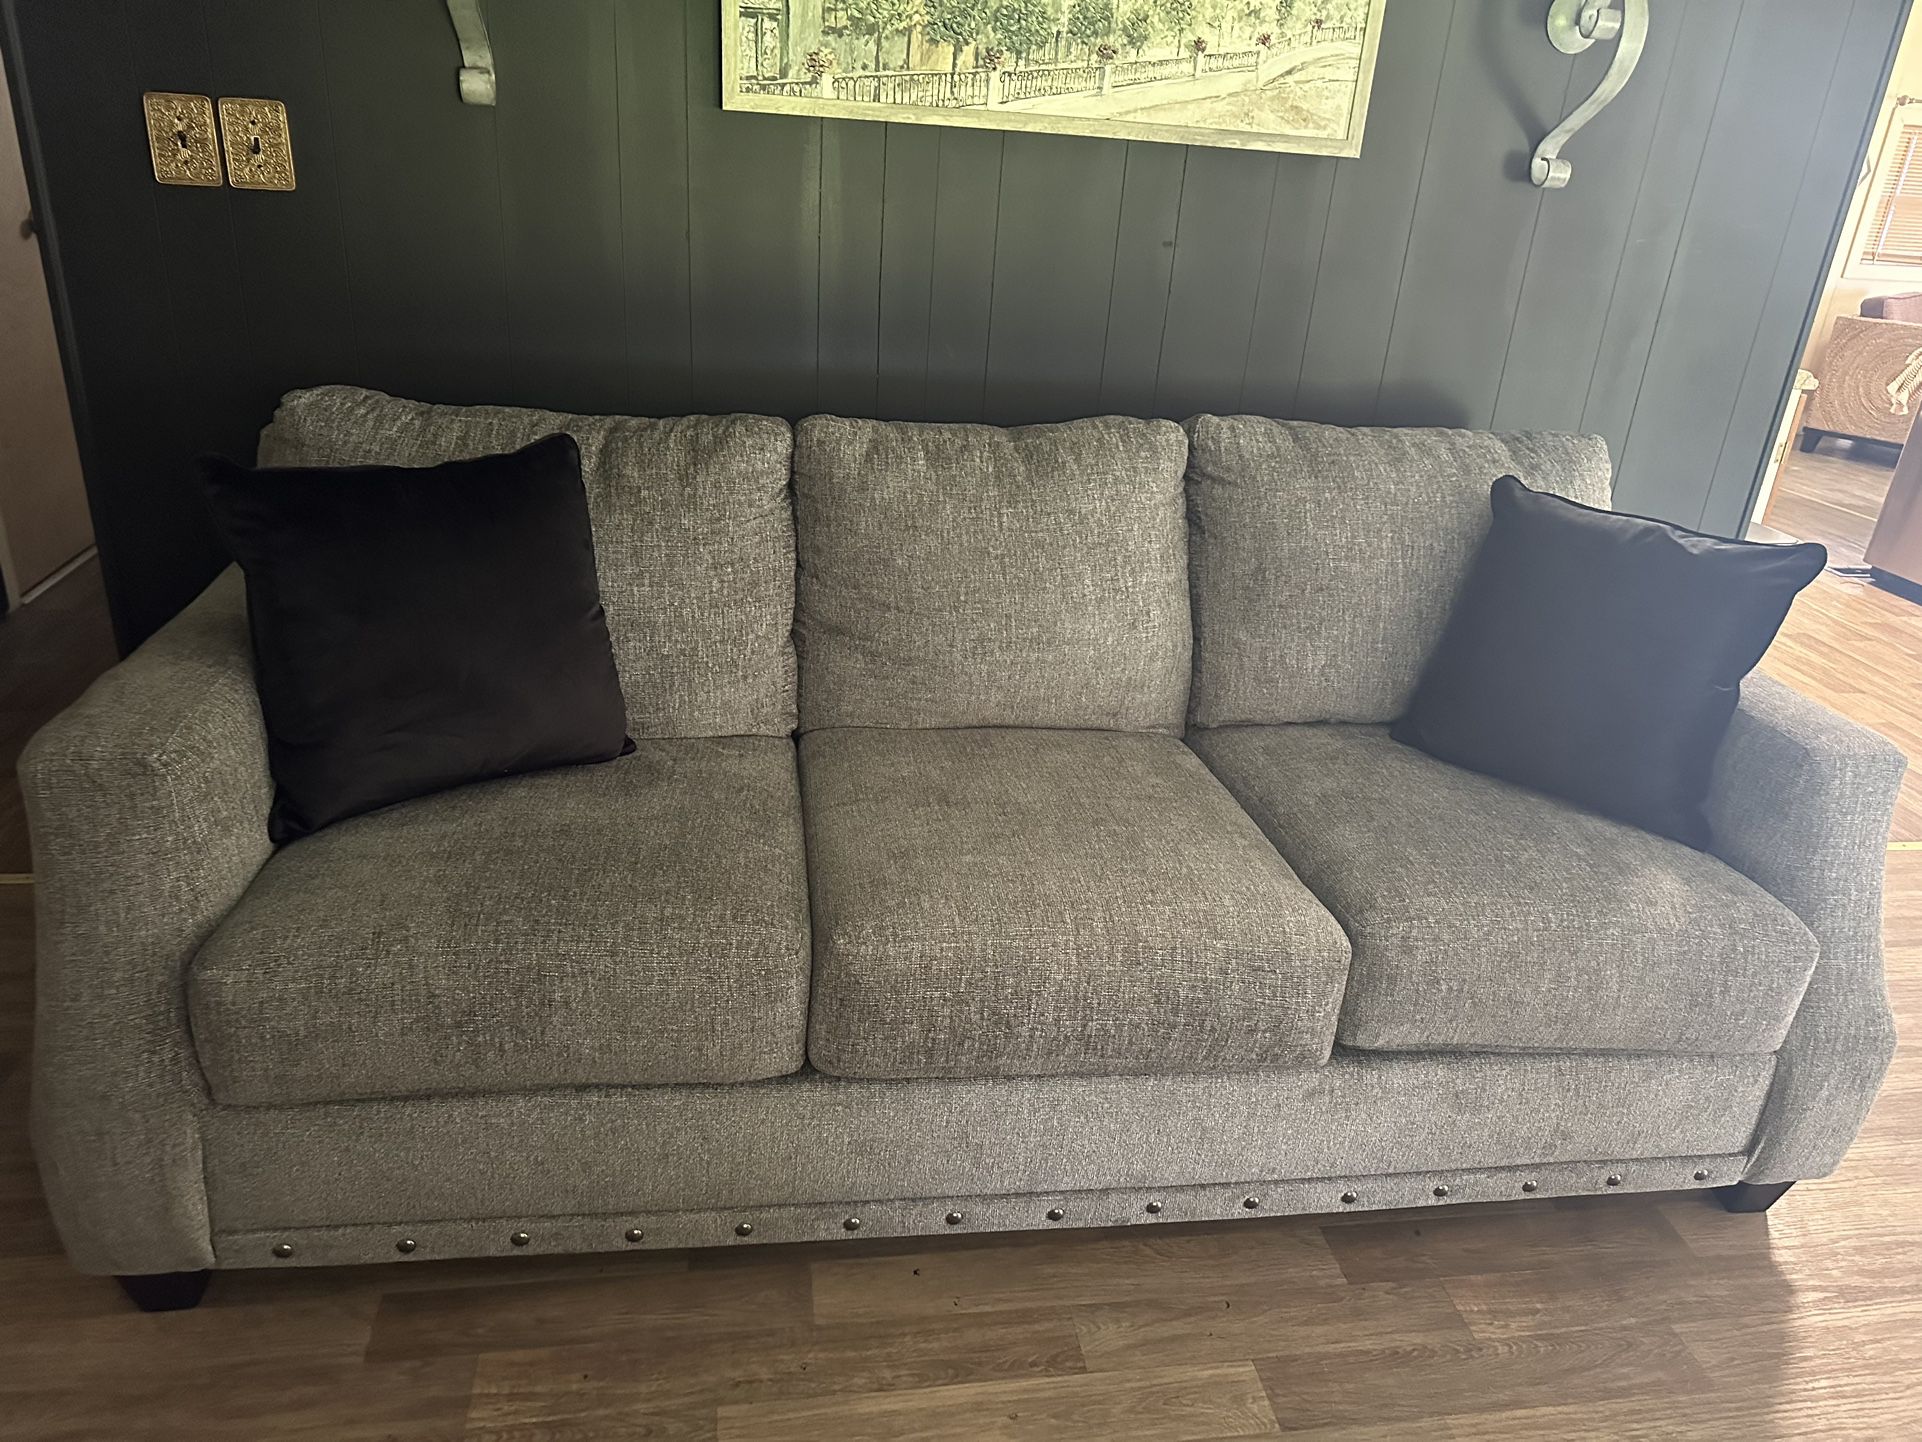 sofa like new hardly used